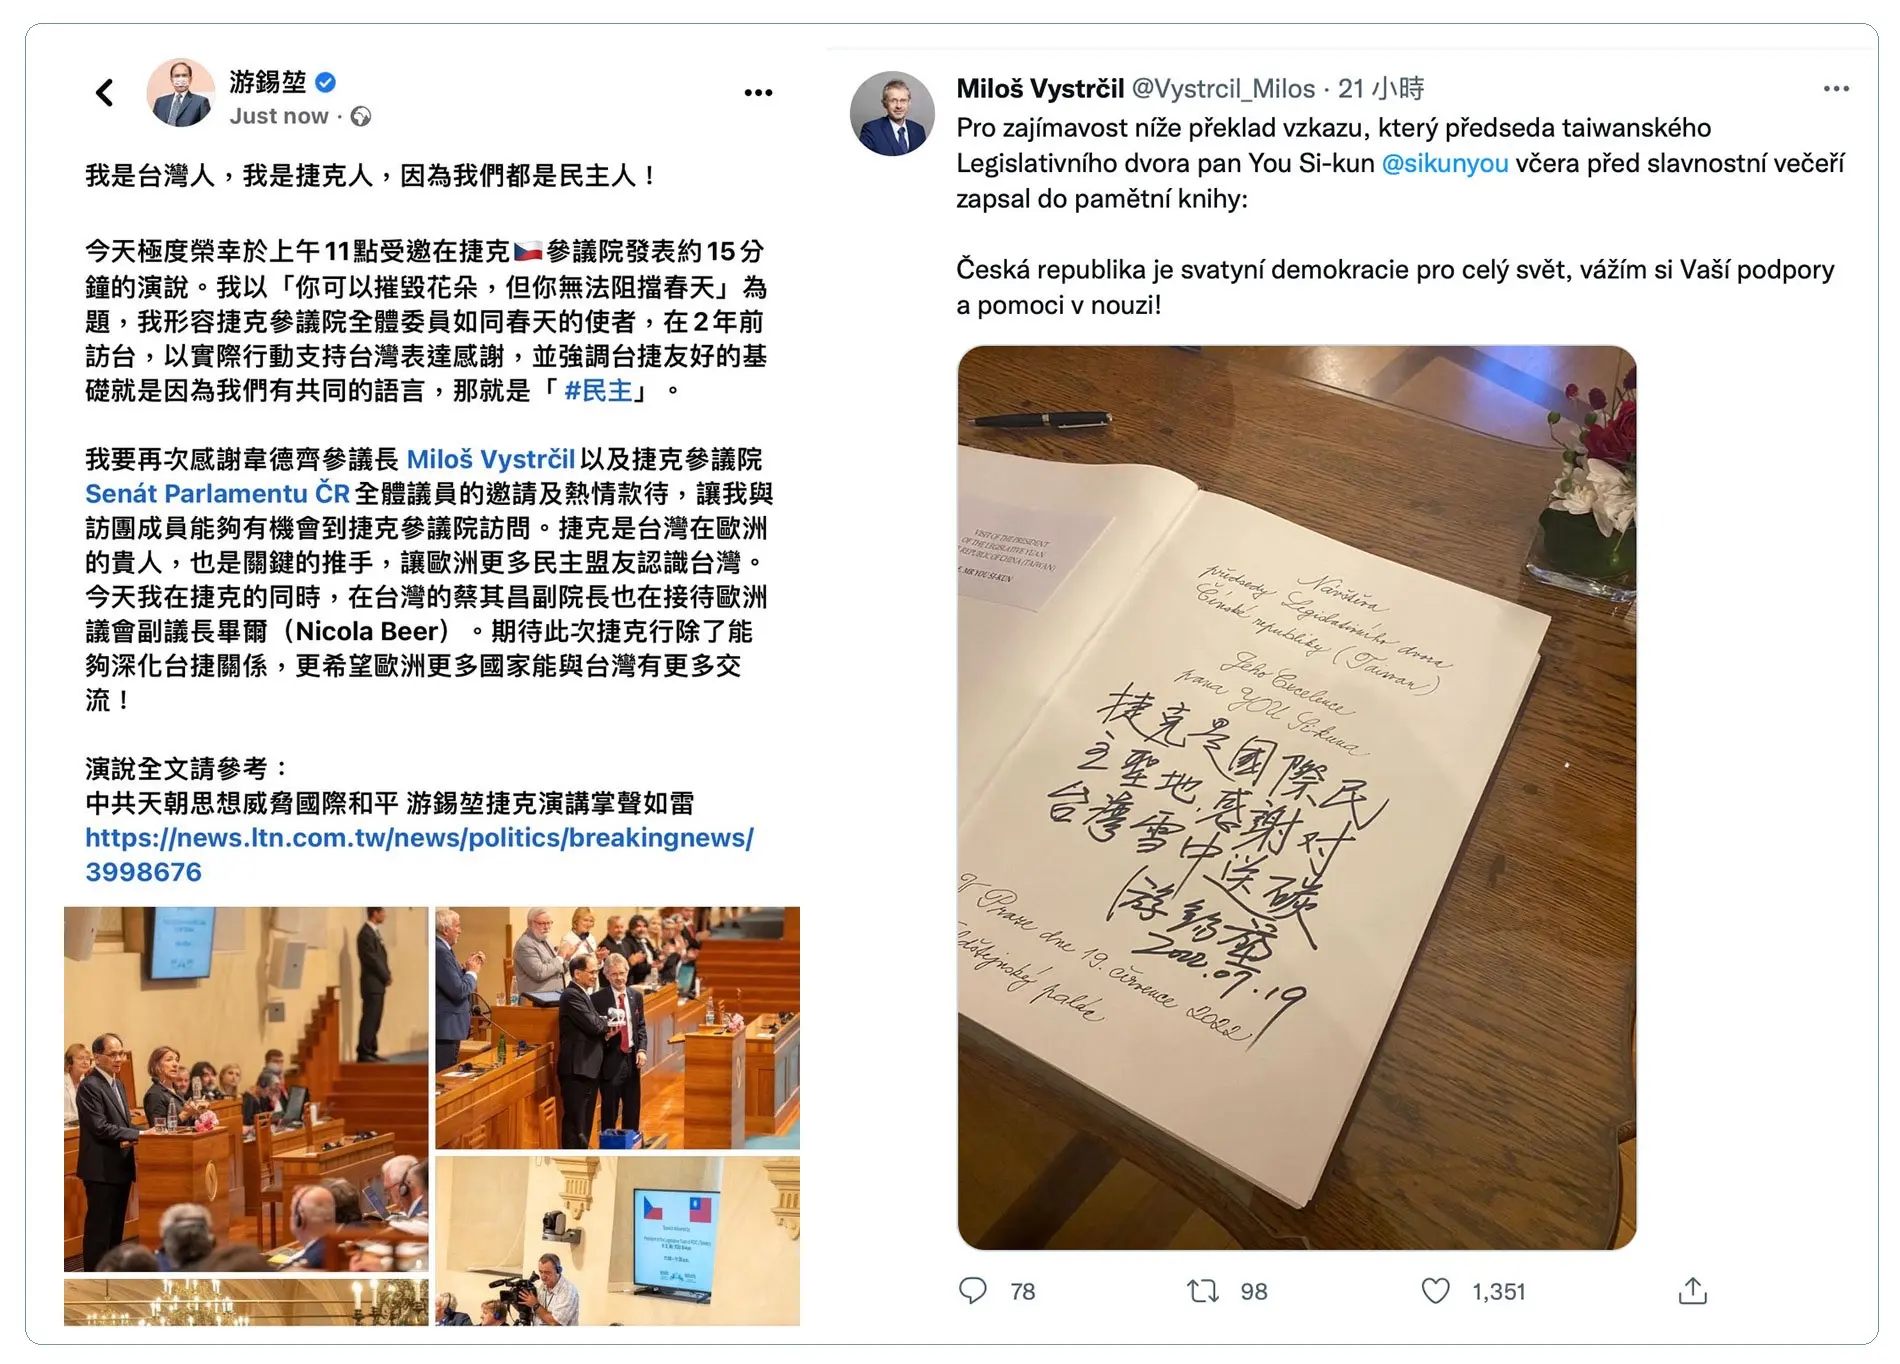 左：台灣立法院長游錫堃率團出訪捷克，受邀在捷克參議院演講，創下台灣國會議長在歐洲國家國會殿堂發表演說的首例。（游錫堃臉書）；右：捷克參議院議長維特齊在個人推特分享台灣立法院長游錫堃的留言。（游錫堃臉書）